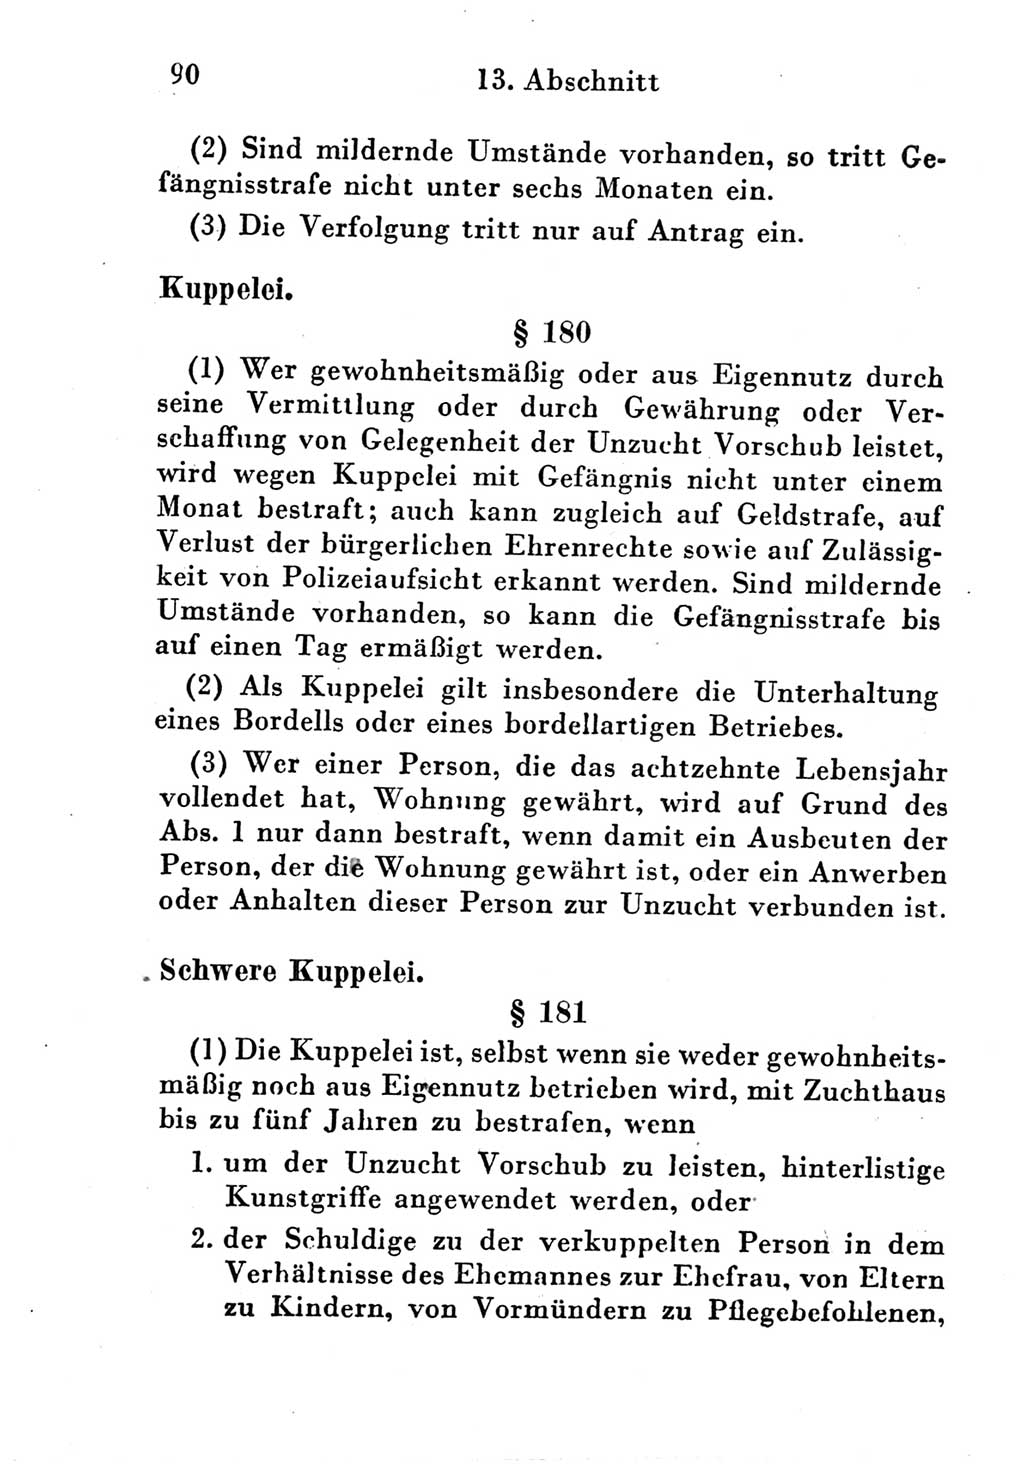 Strafgesetzbuch (StGB) und andere Strafgesetze [Deutsche Demokratische Republik (DDR)] 1951, Seite 90 (StGB Strafges. DDR 1951, S. 90)